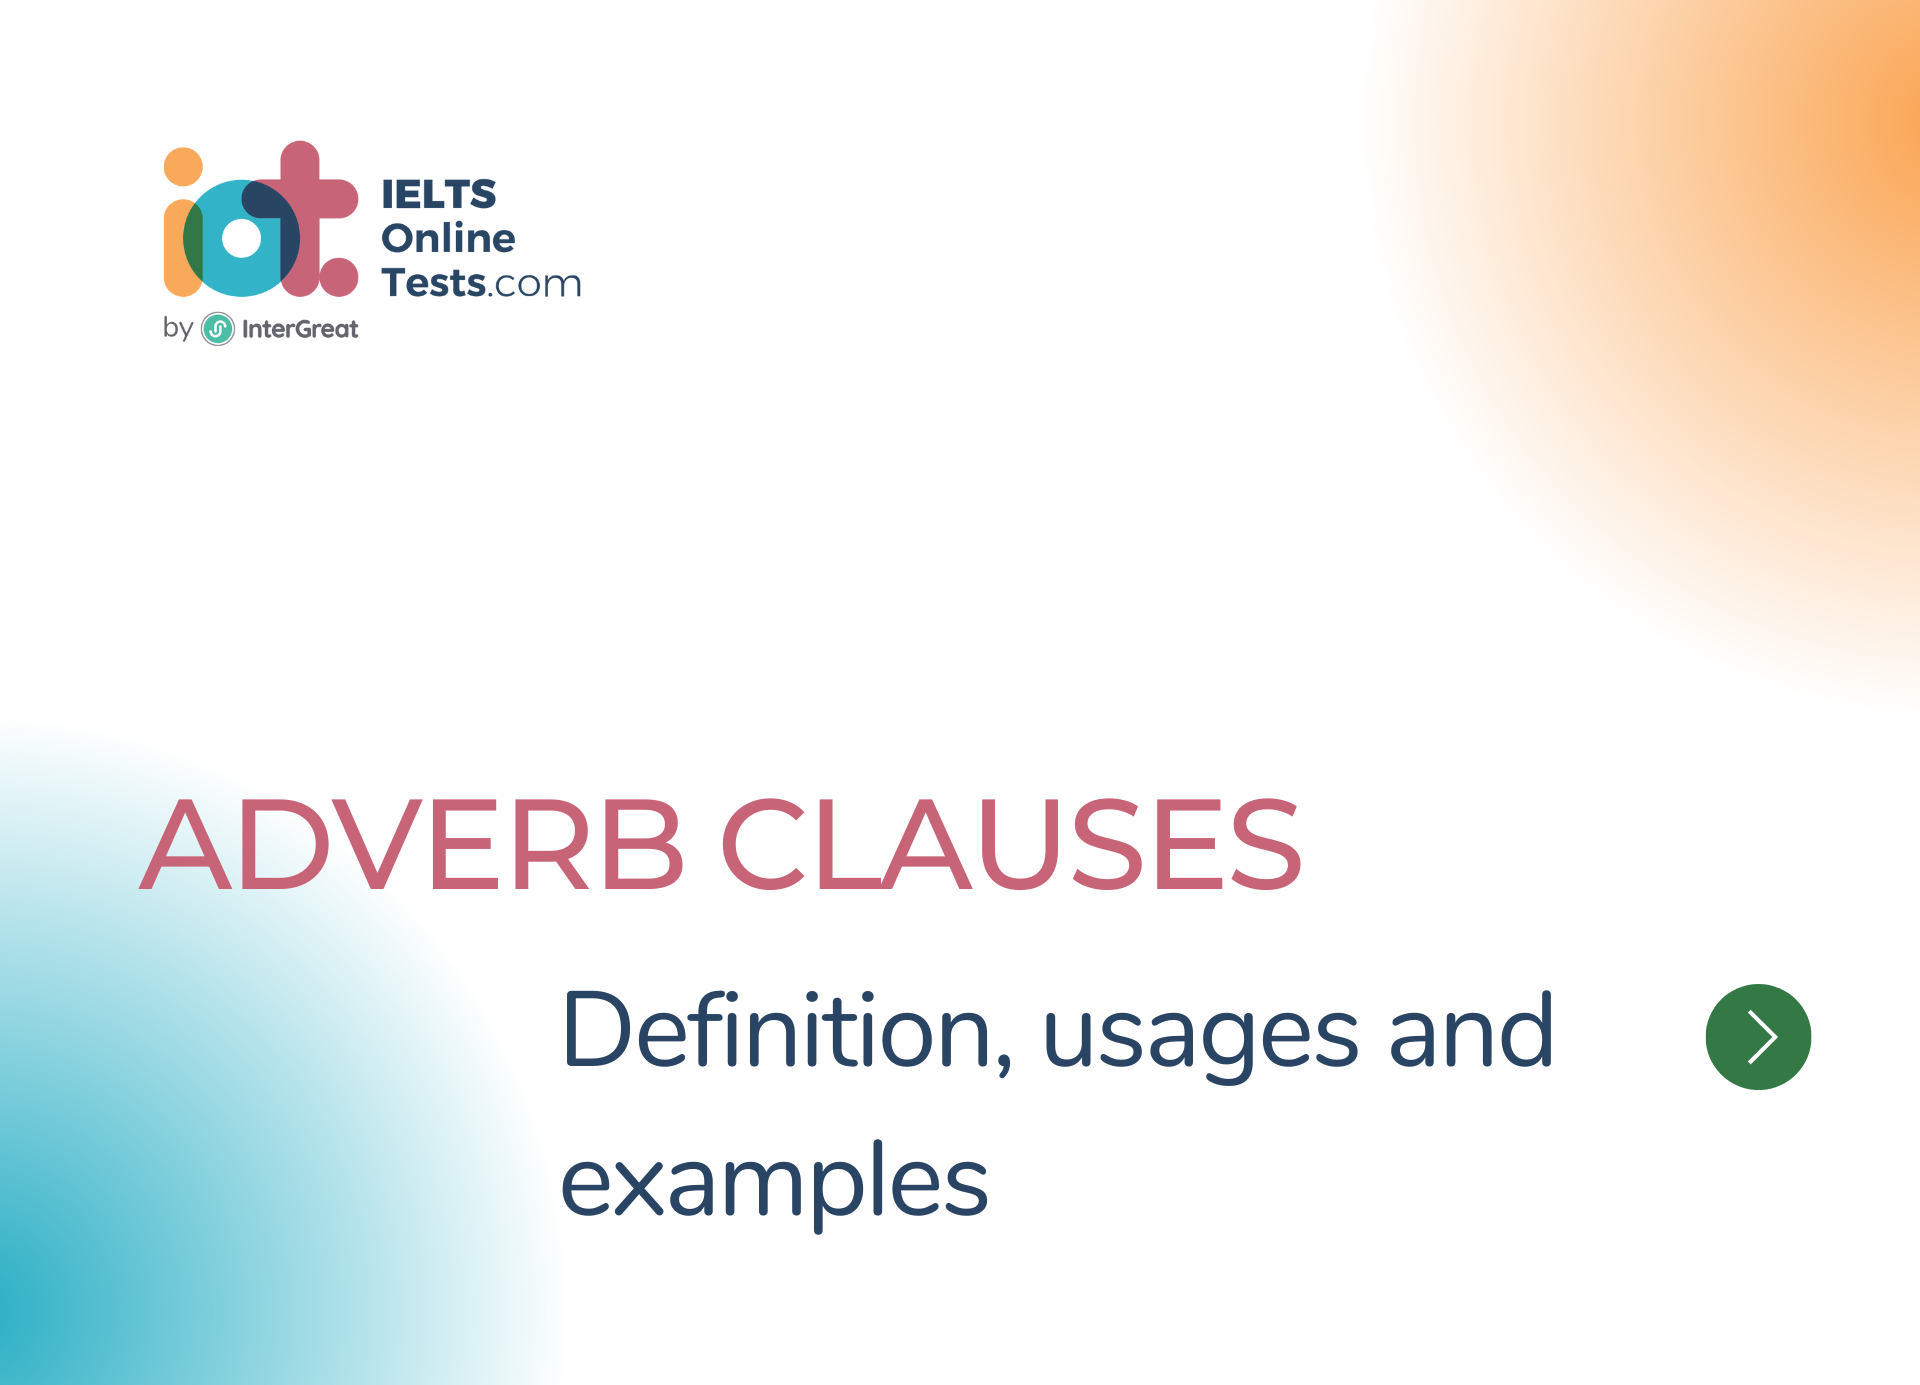 Mệnh đề trạng ngữ (Adverb Clauses) định nghĩa và ví dụ